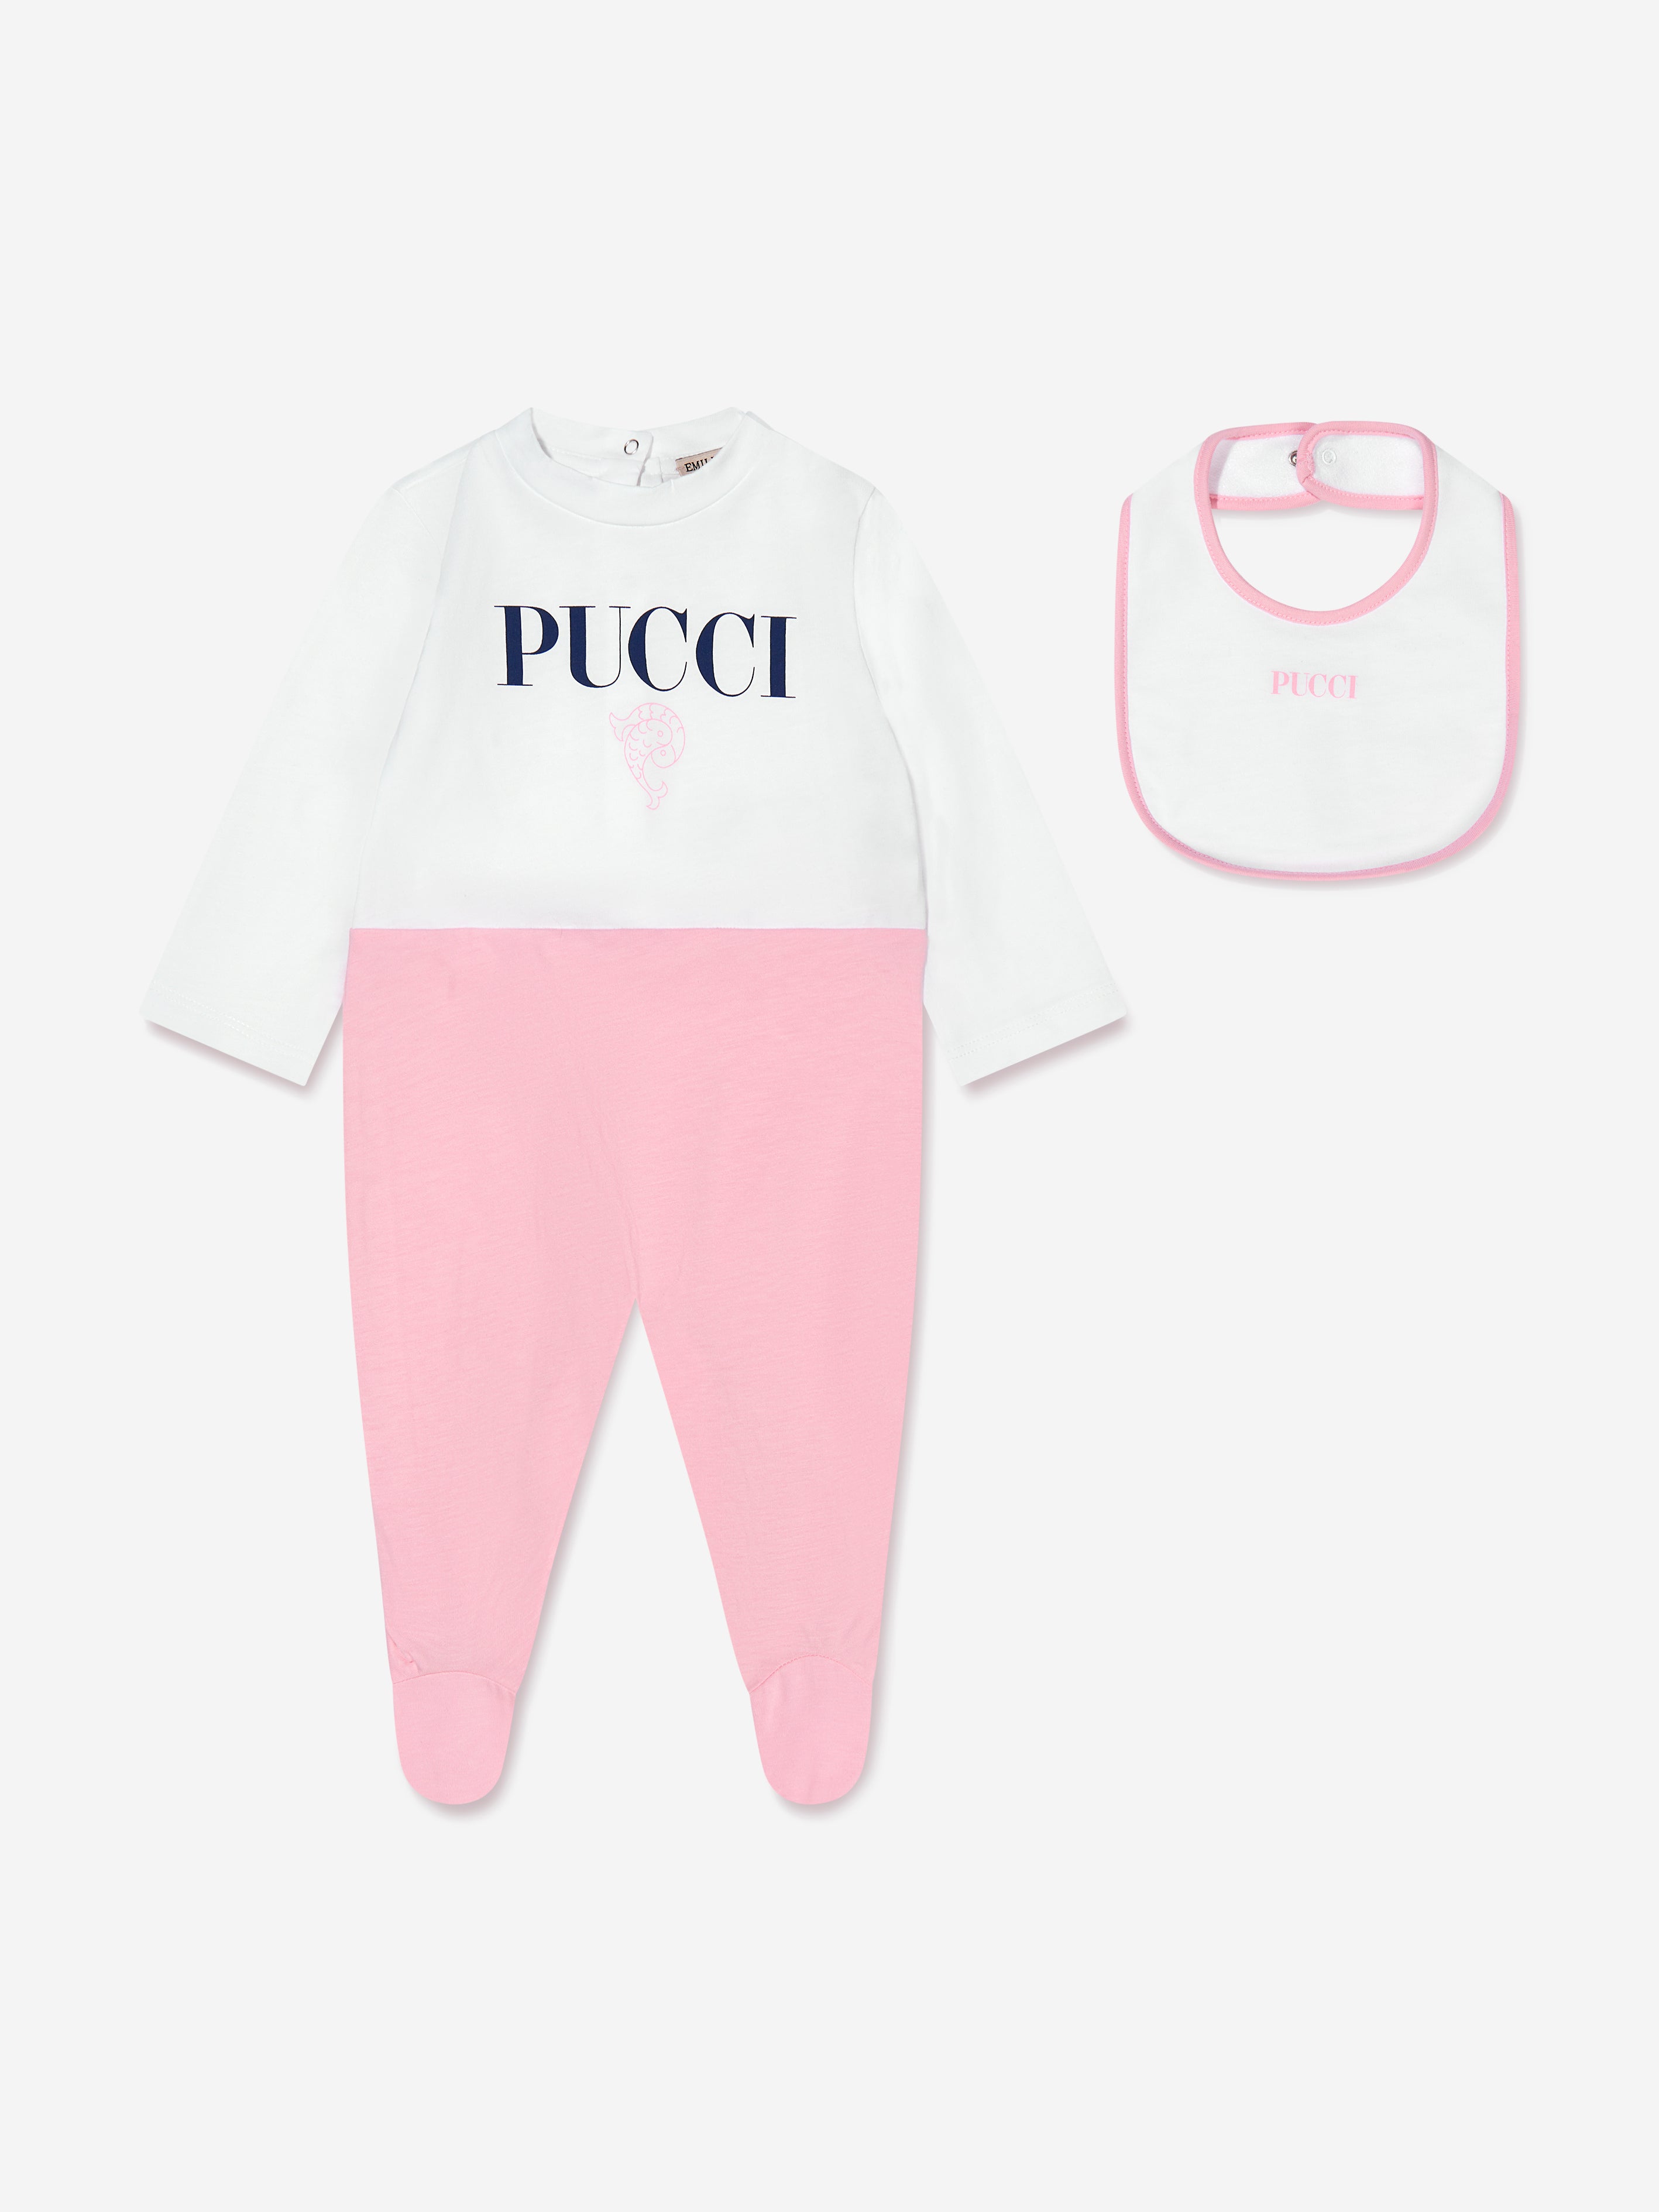 Gucci Pajamas Baby Pink